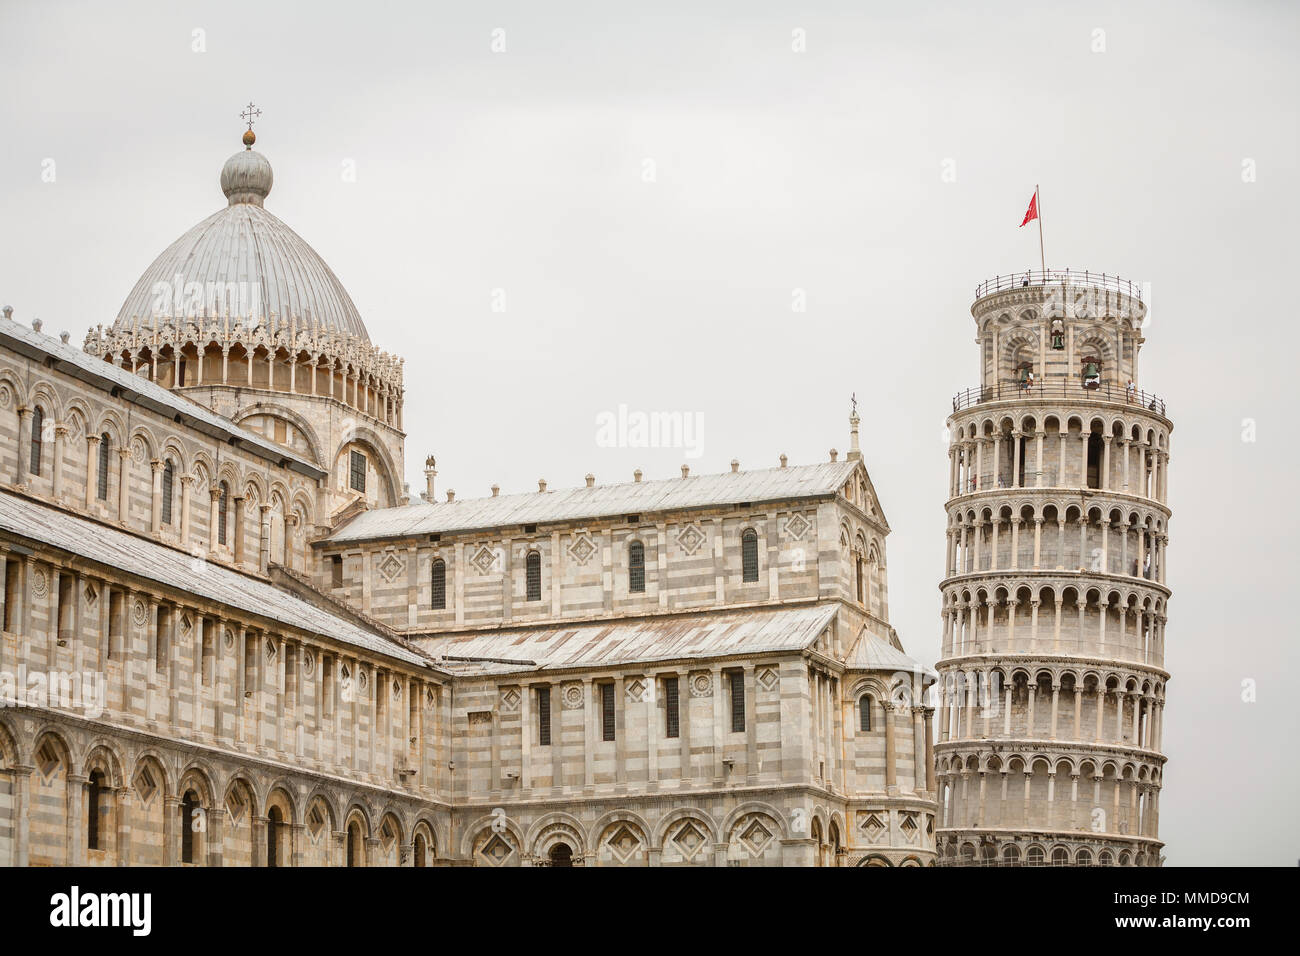 La Catedral de Pisa, la catedral católica romana dedicada a la asunción de la Virgen María y la Torre Inclinada de Pisa, el campanario de la catedral de Pisa Foto de stock